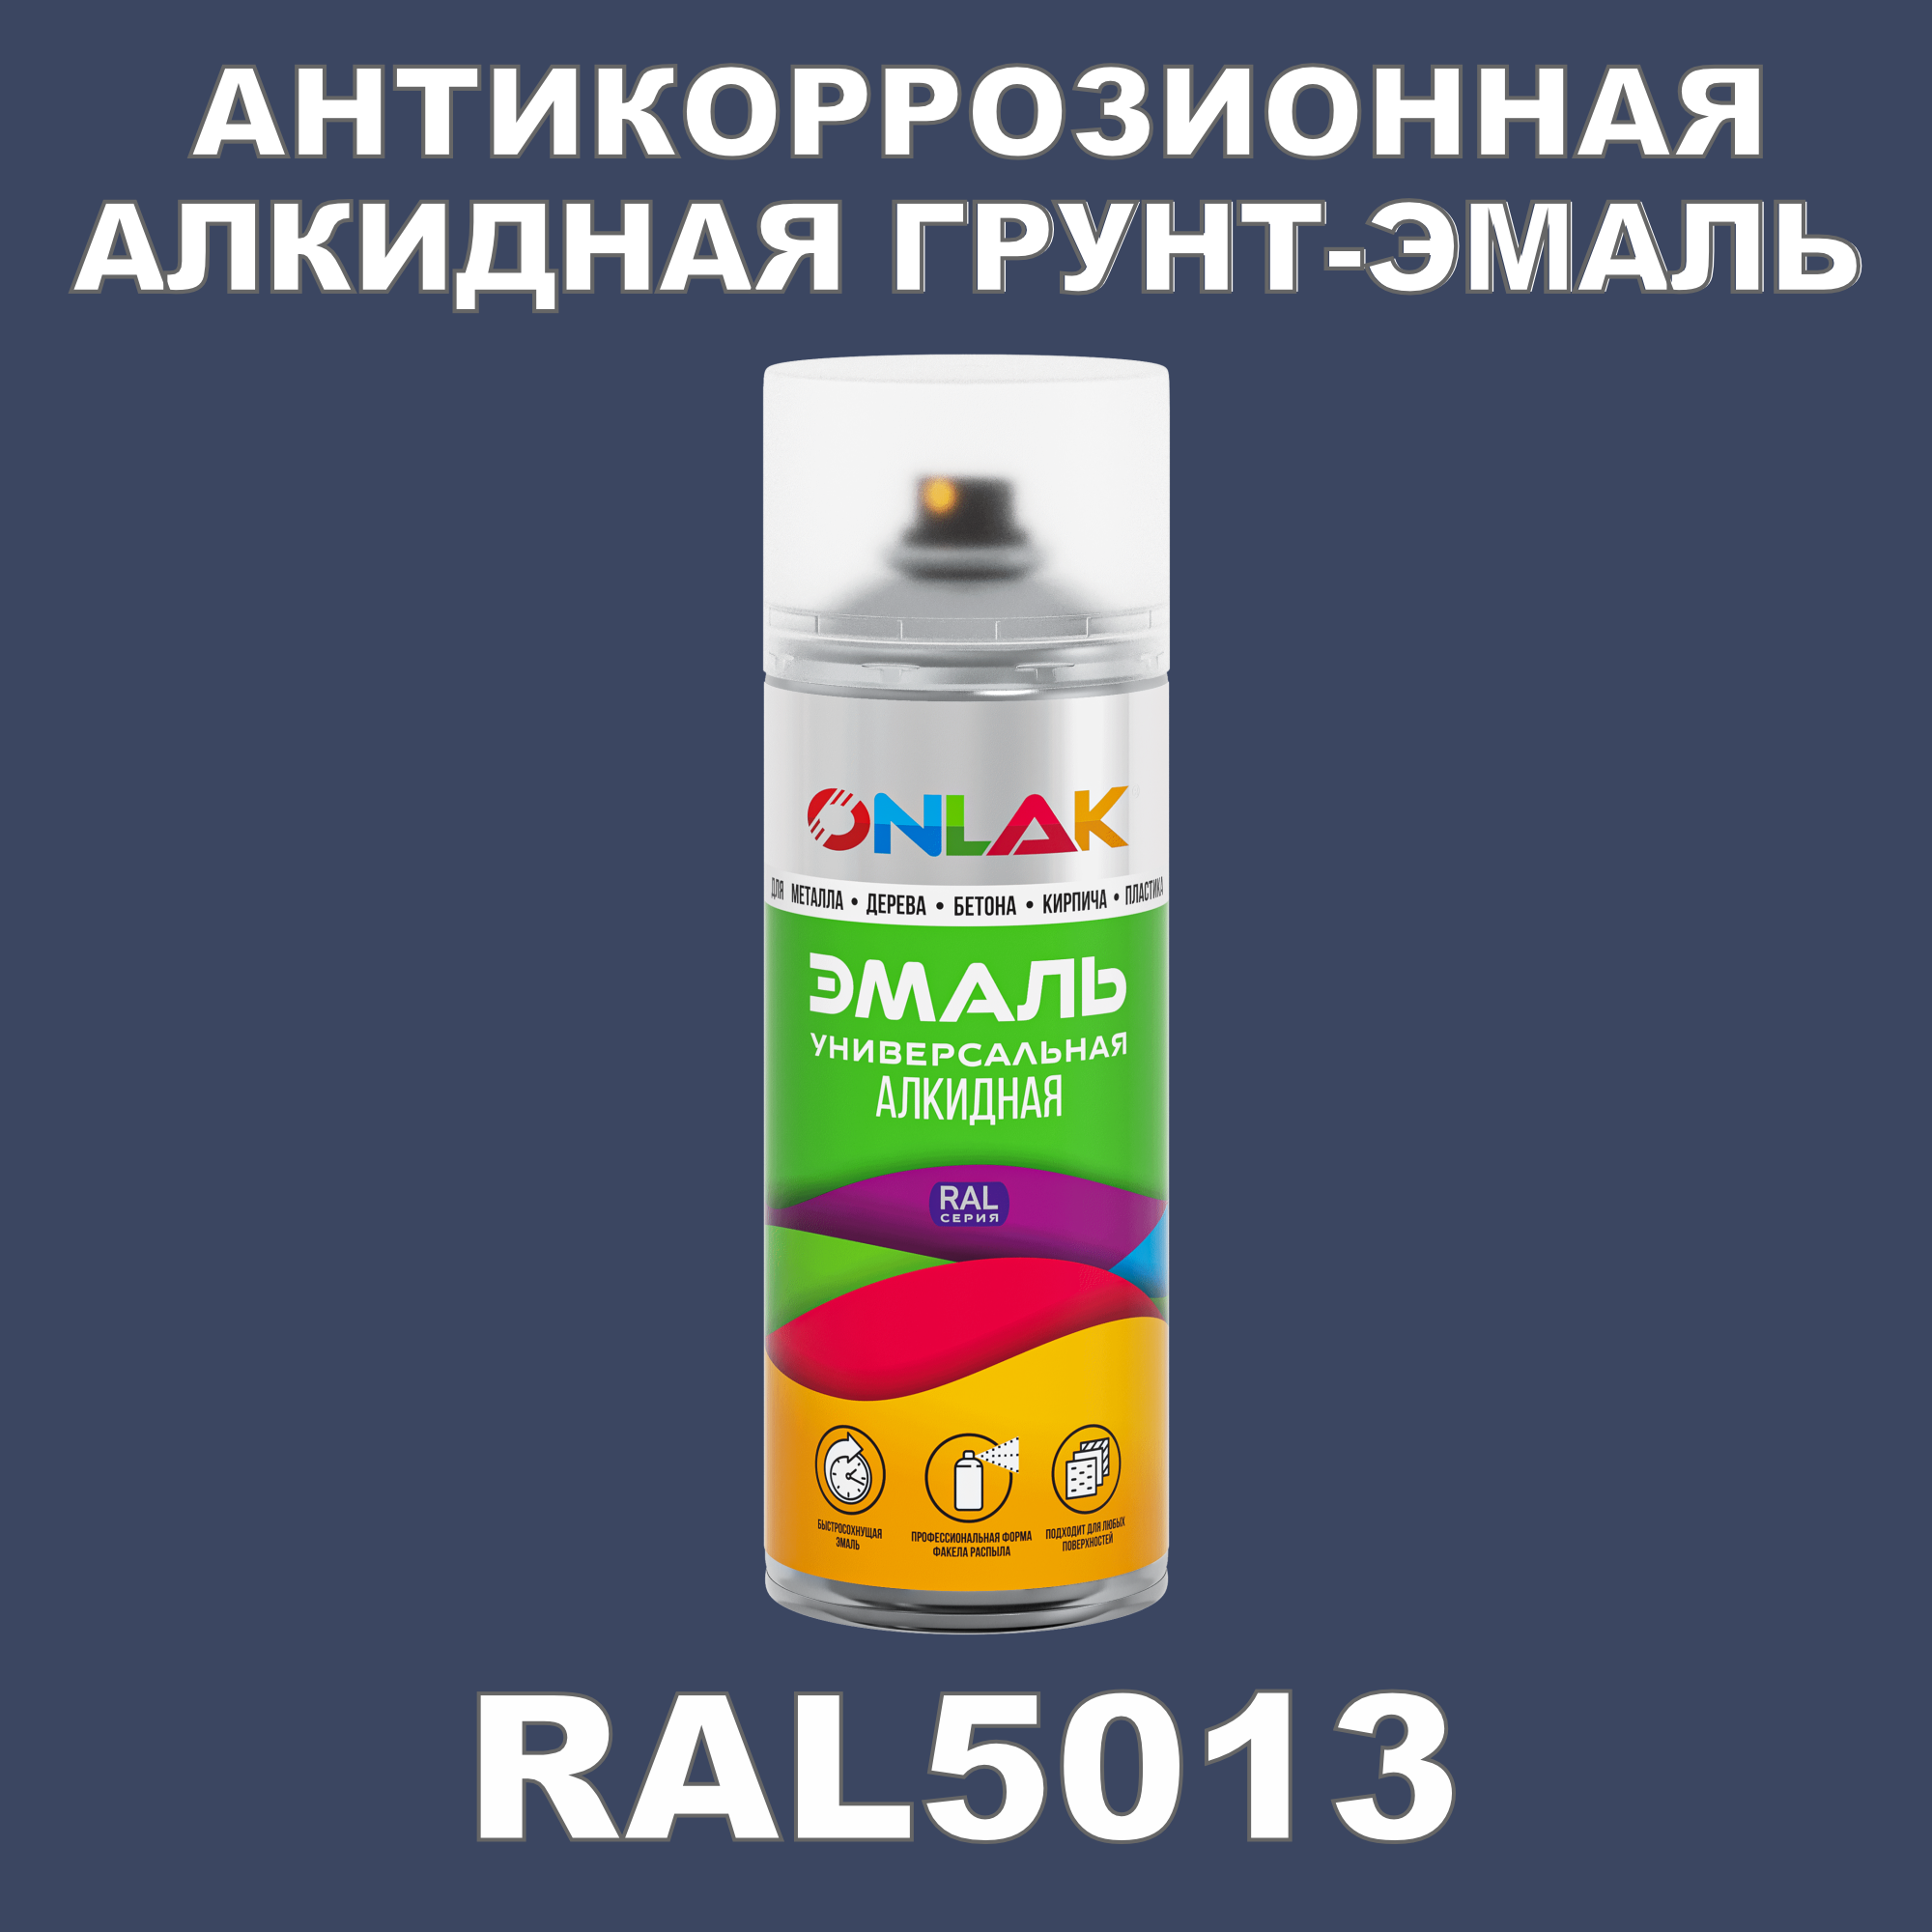 Антикоррозионная грунт-эмаль ONLAK RAL5013 полуматовая для металла и защиты от ржавчины